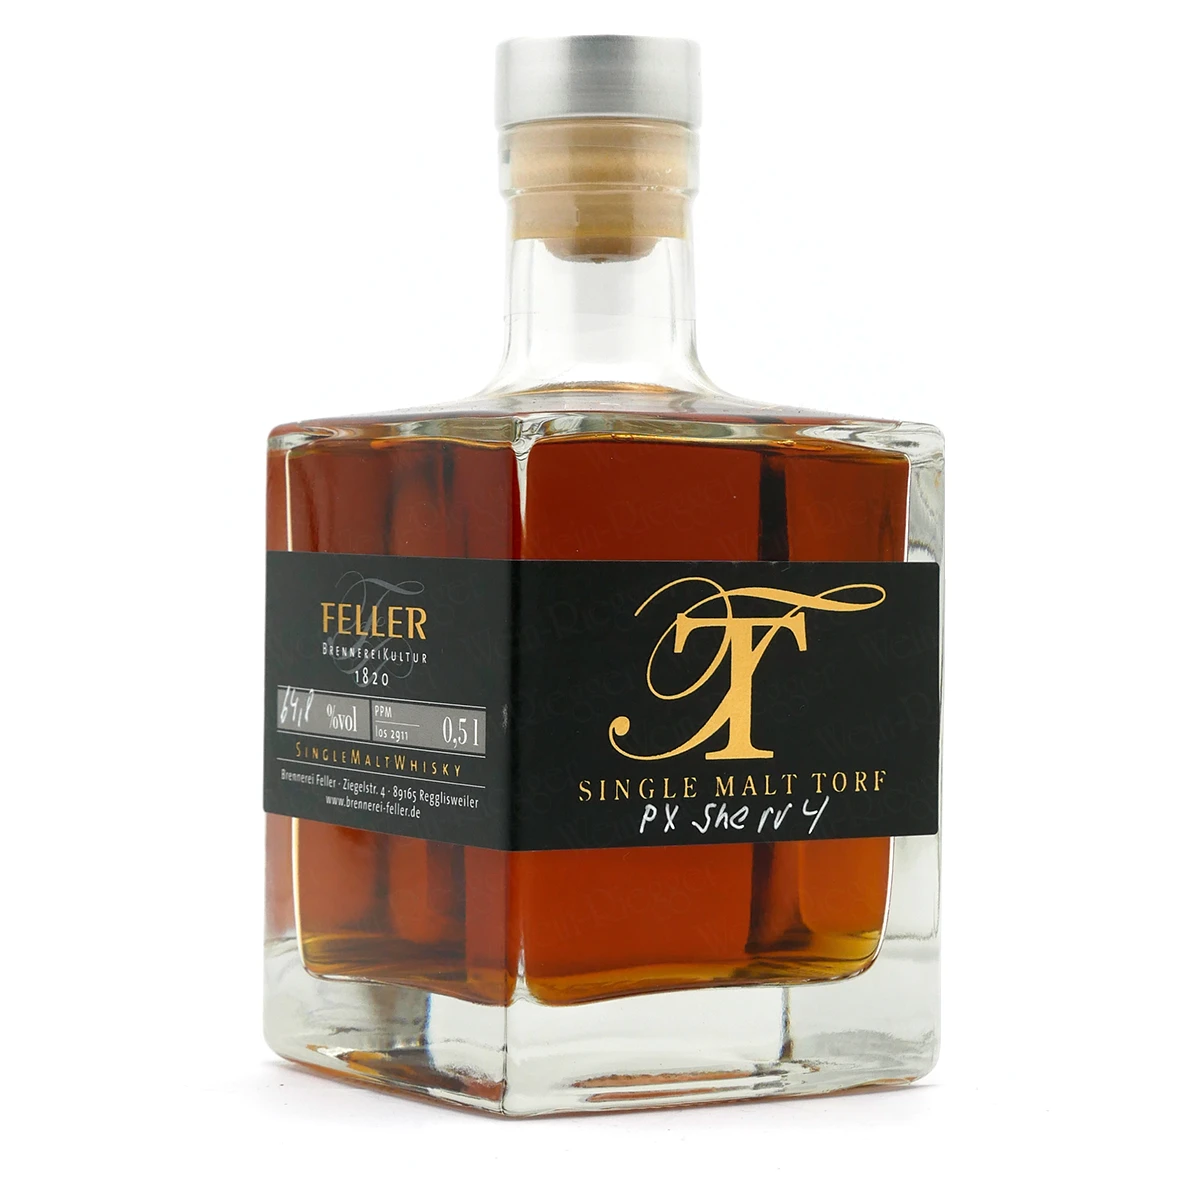 TORF PX SHERRY Single Malt Whisky | Feller